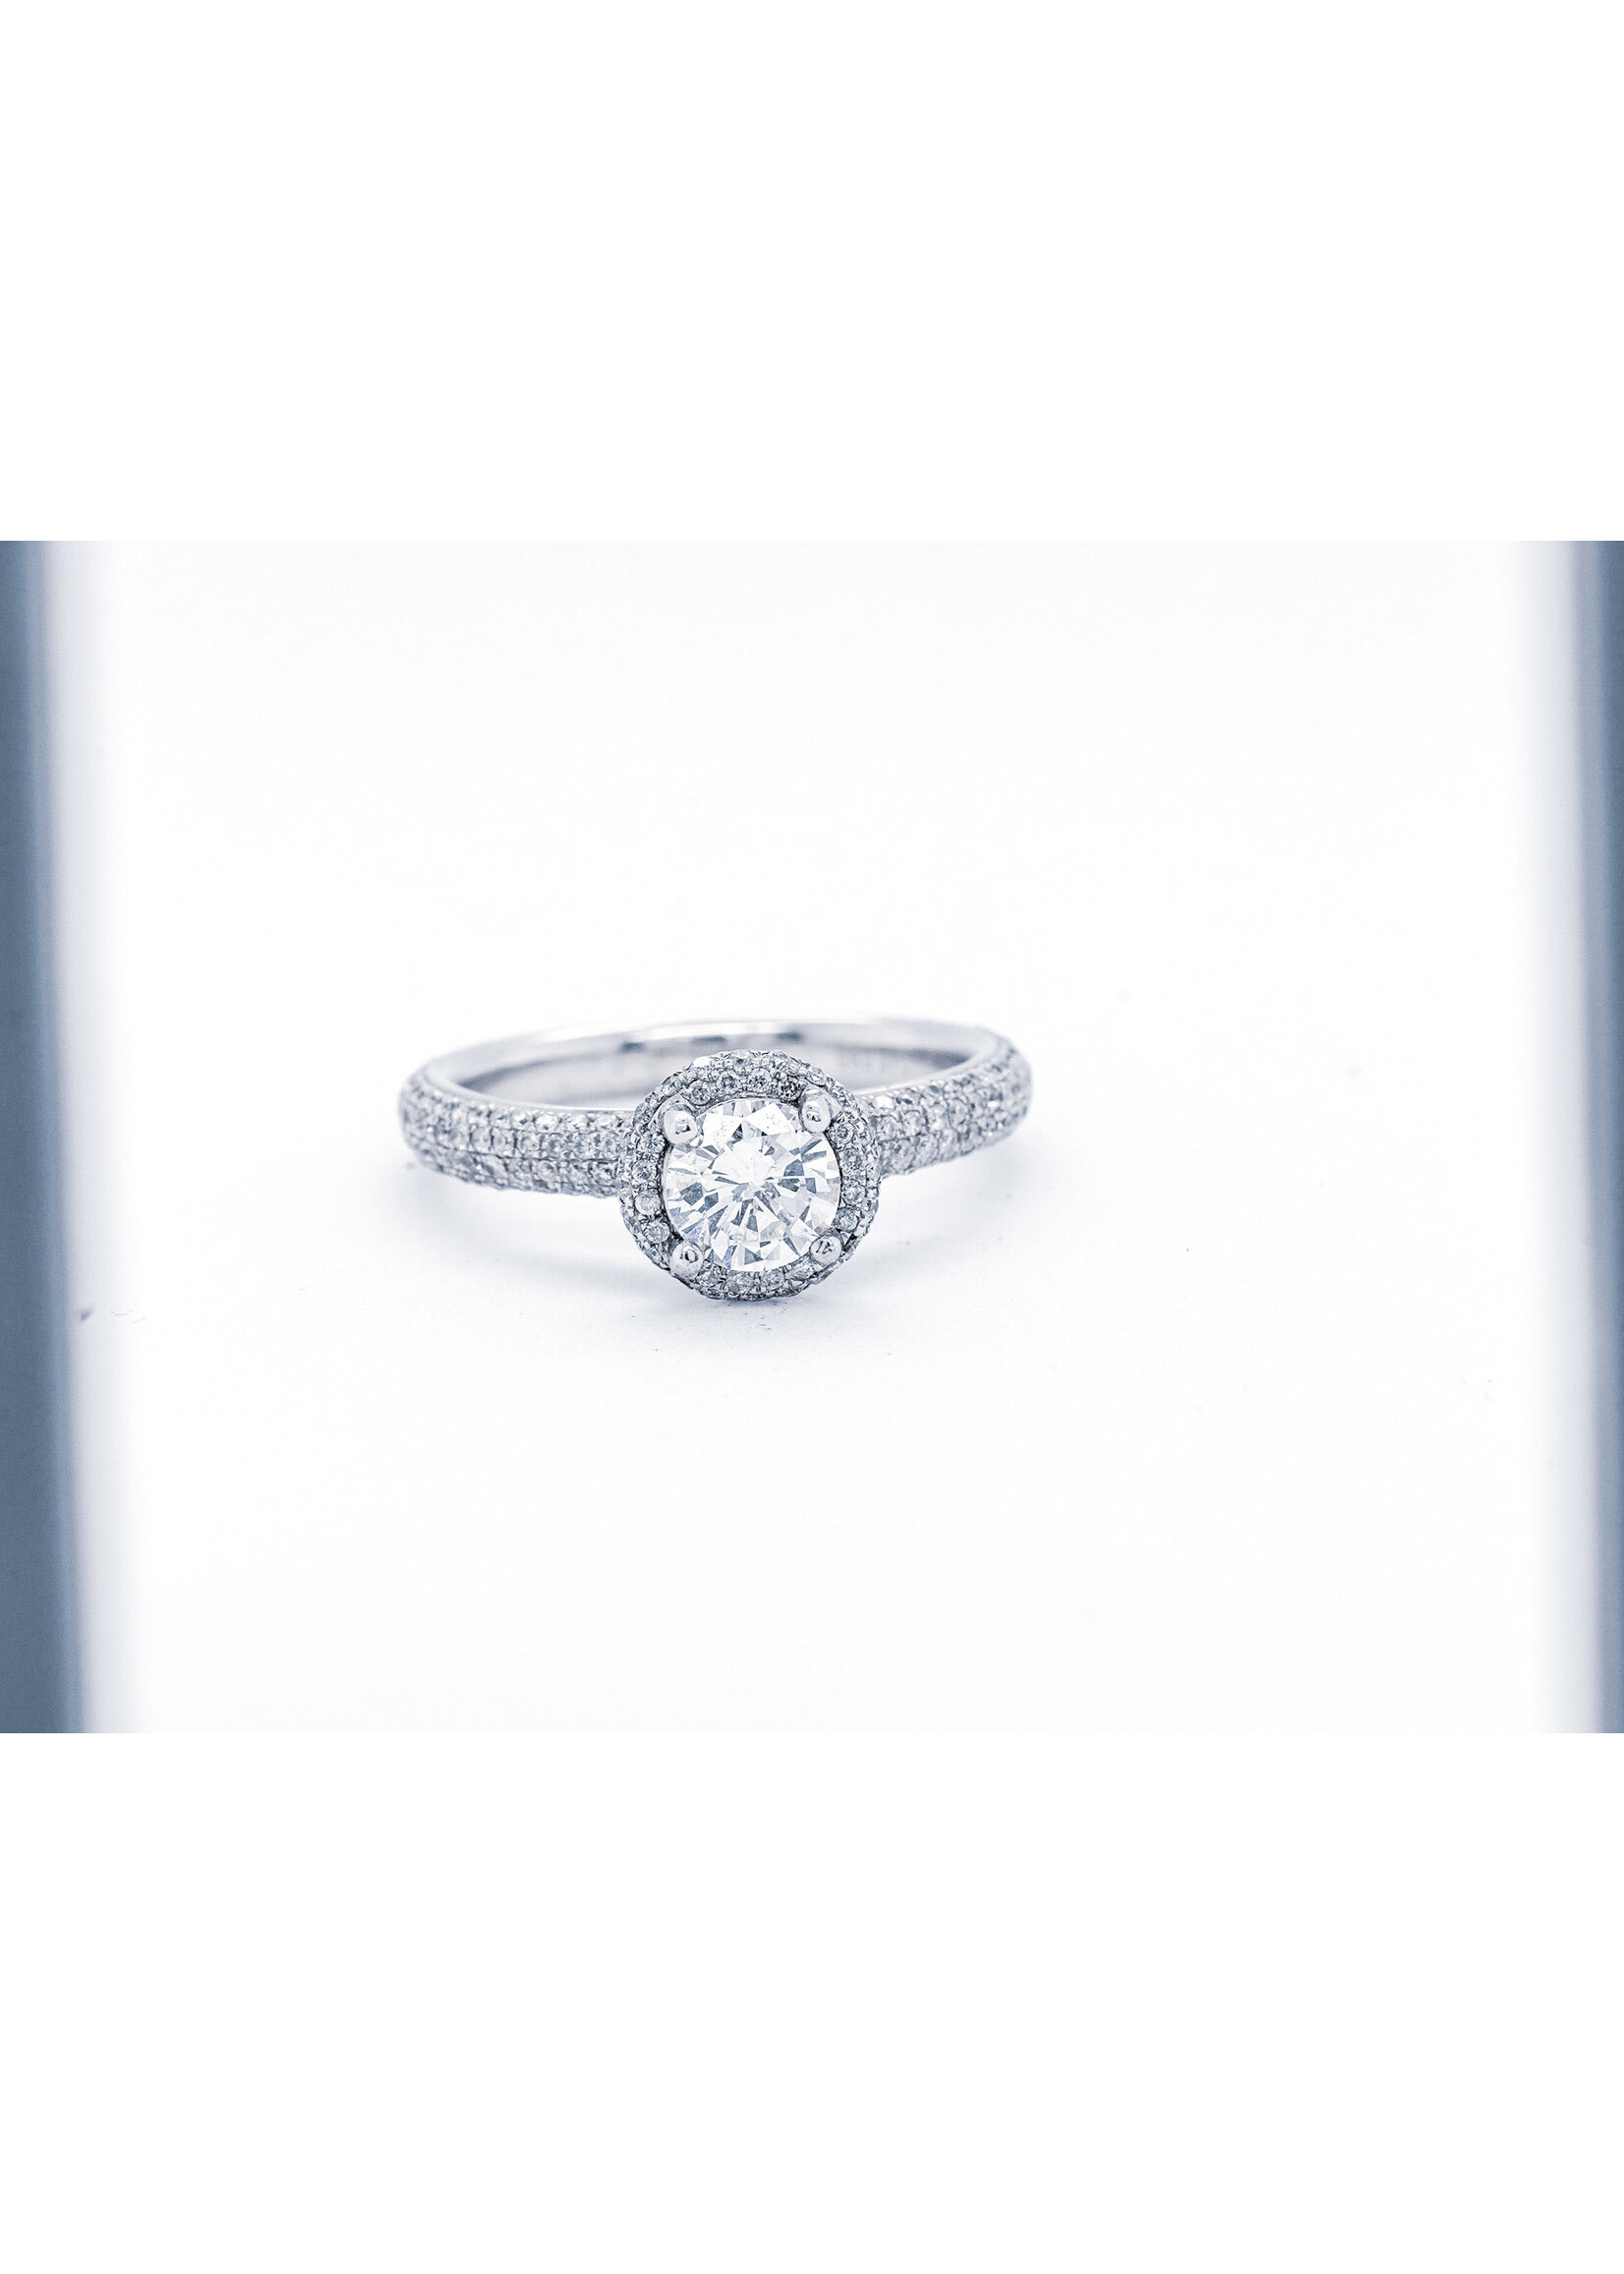 14KW 4.23g 1.59TW (.73ctr) I/I1 Round Pave Diamond Halo Engagement Ring (size 6.75)